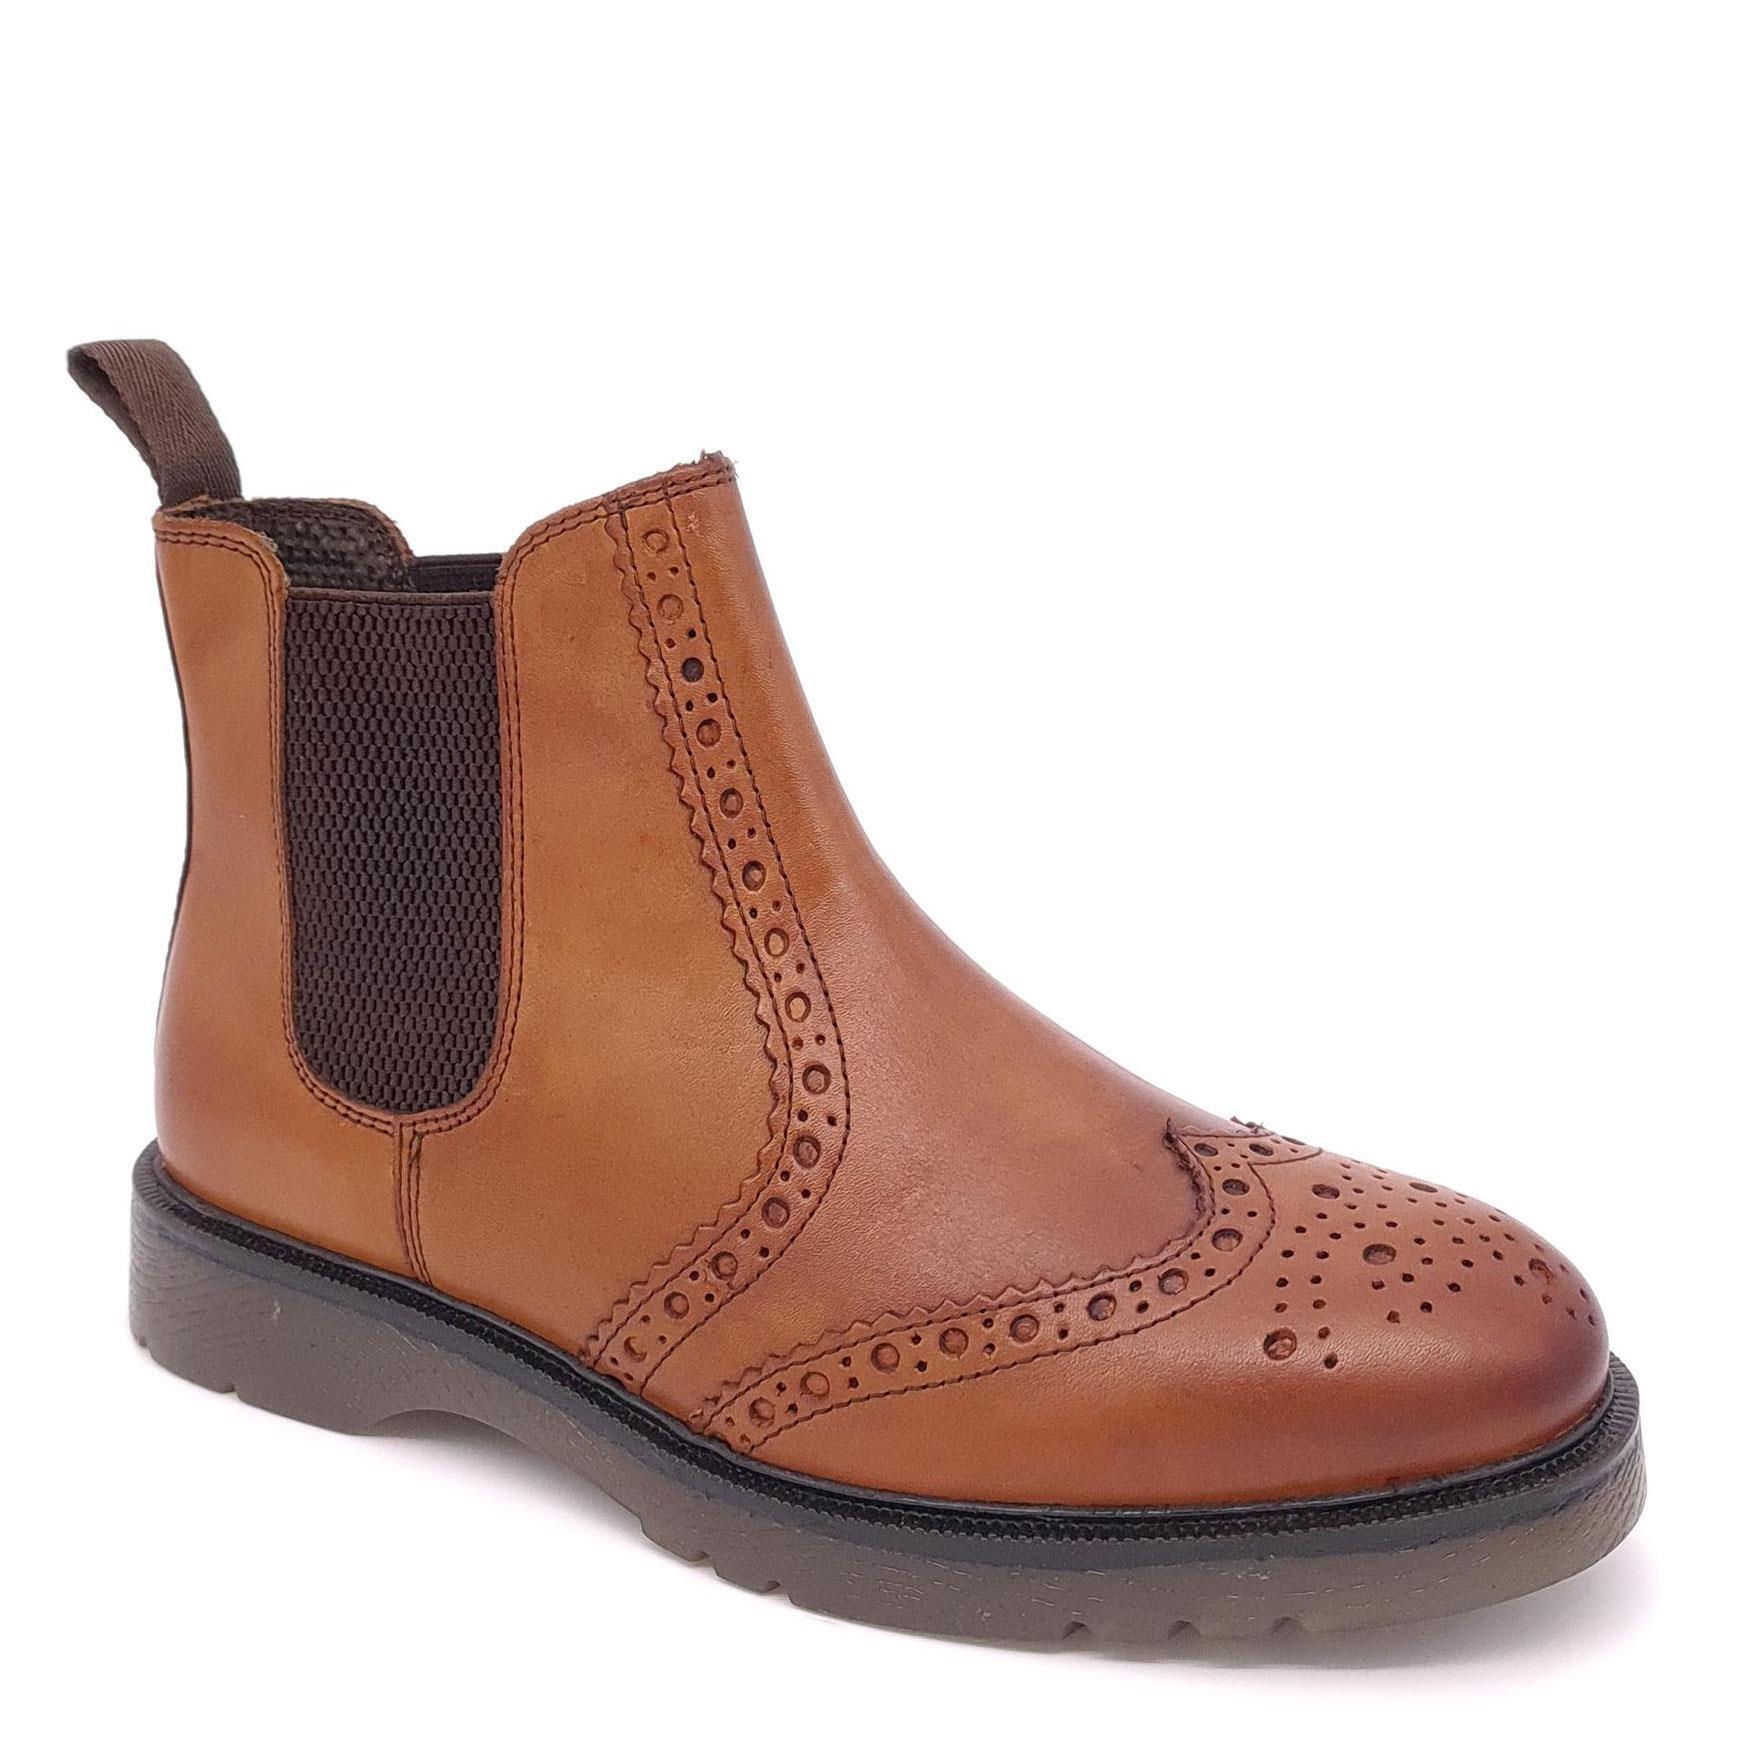 Кожаные ботинки челси с эффектом броги Warkton Frank James, коричневый цена и фото